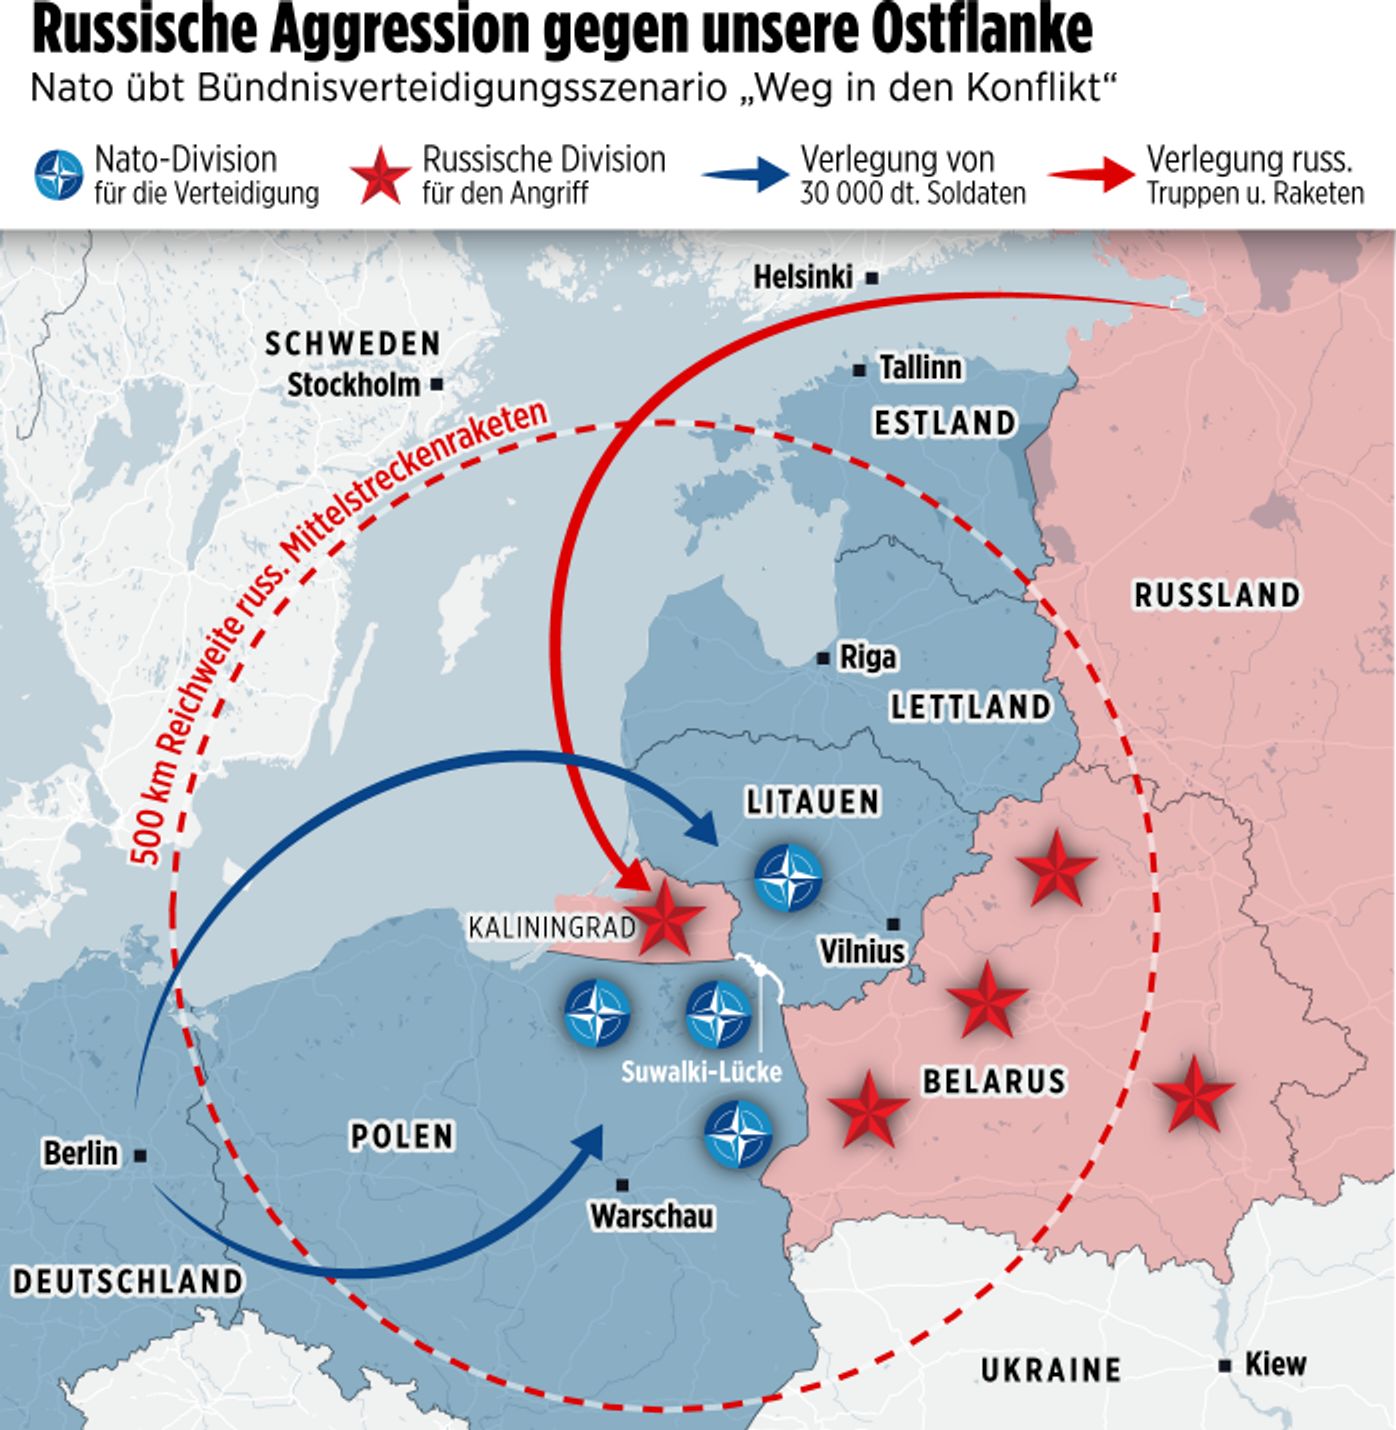 Сценарий войны между Россией и НАТО в Европе летом 2025 года по версии BILD